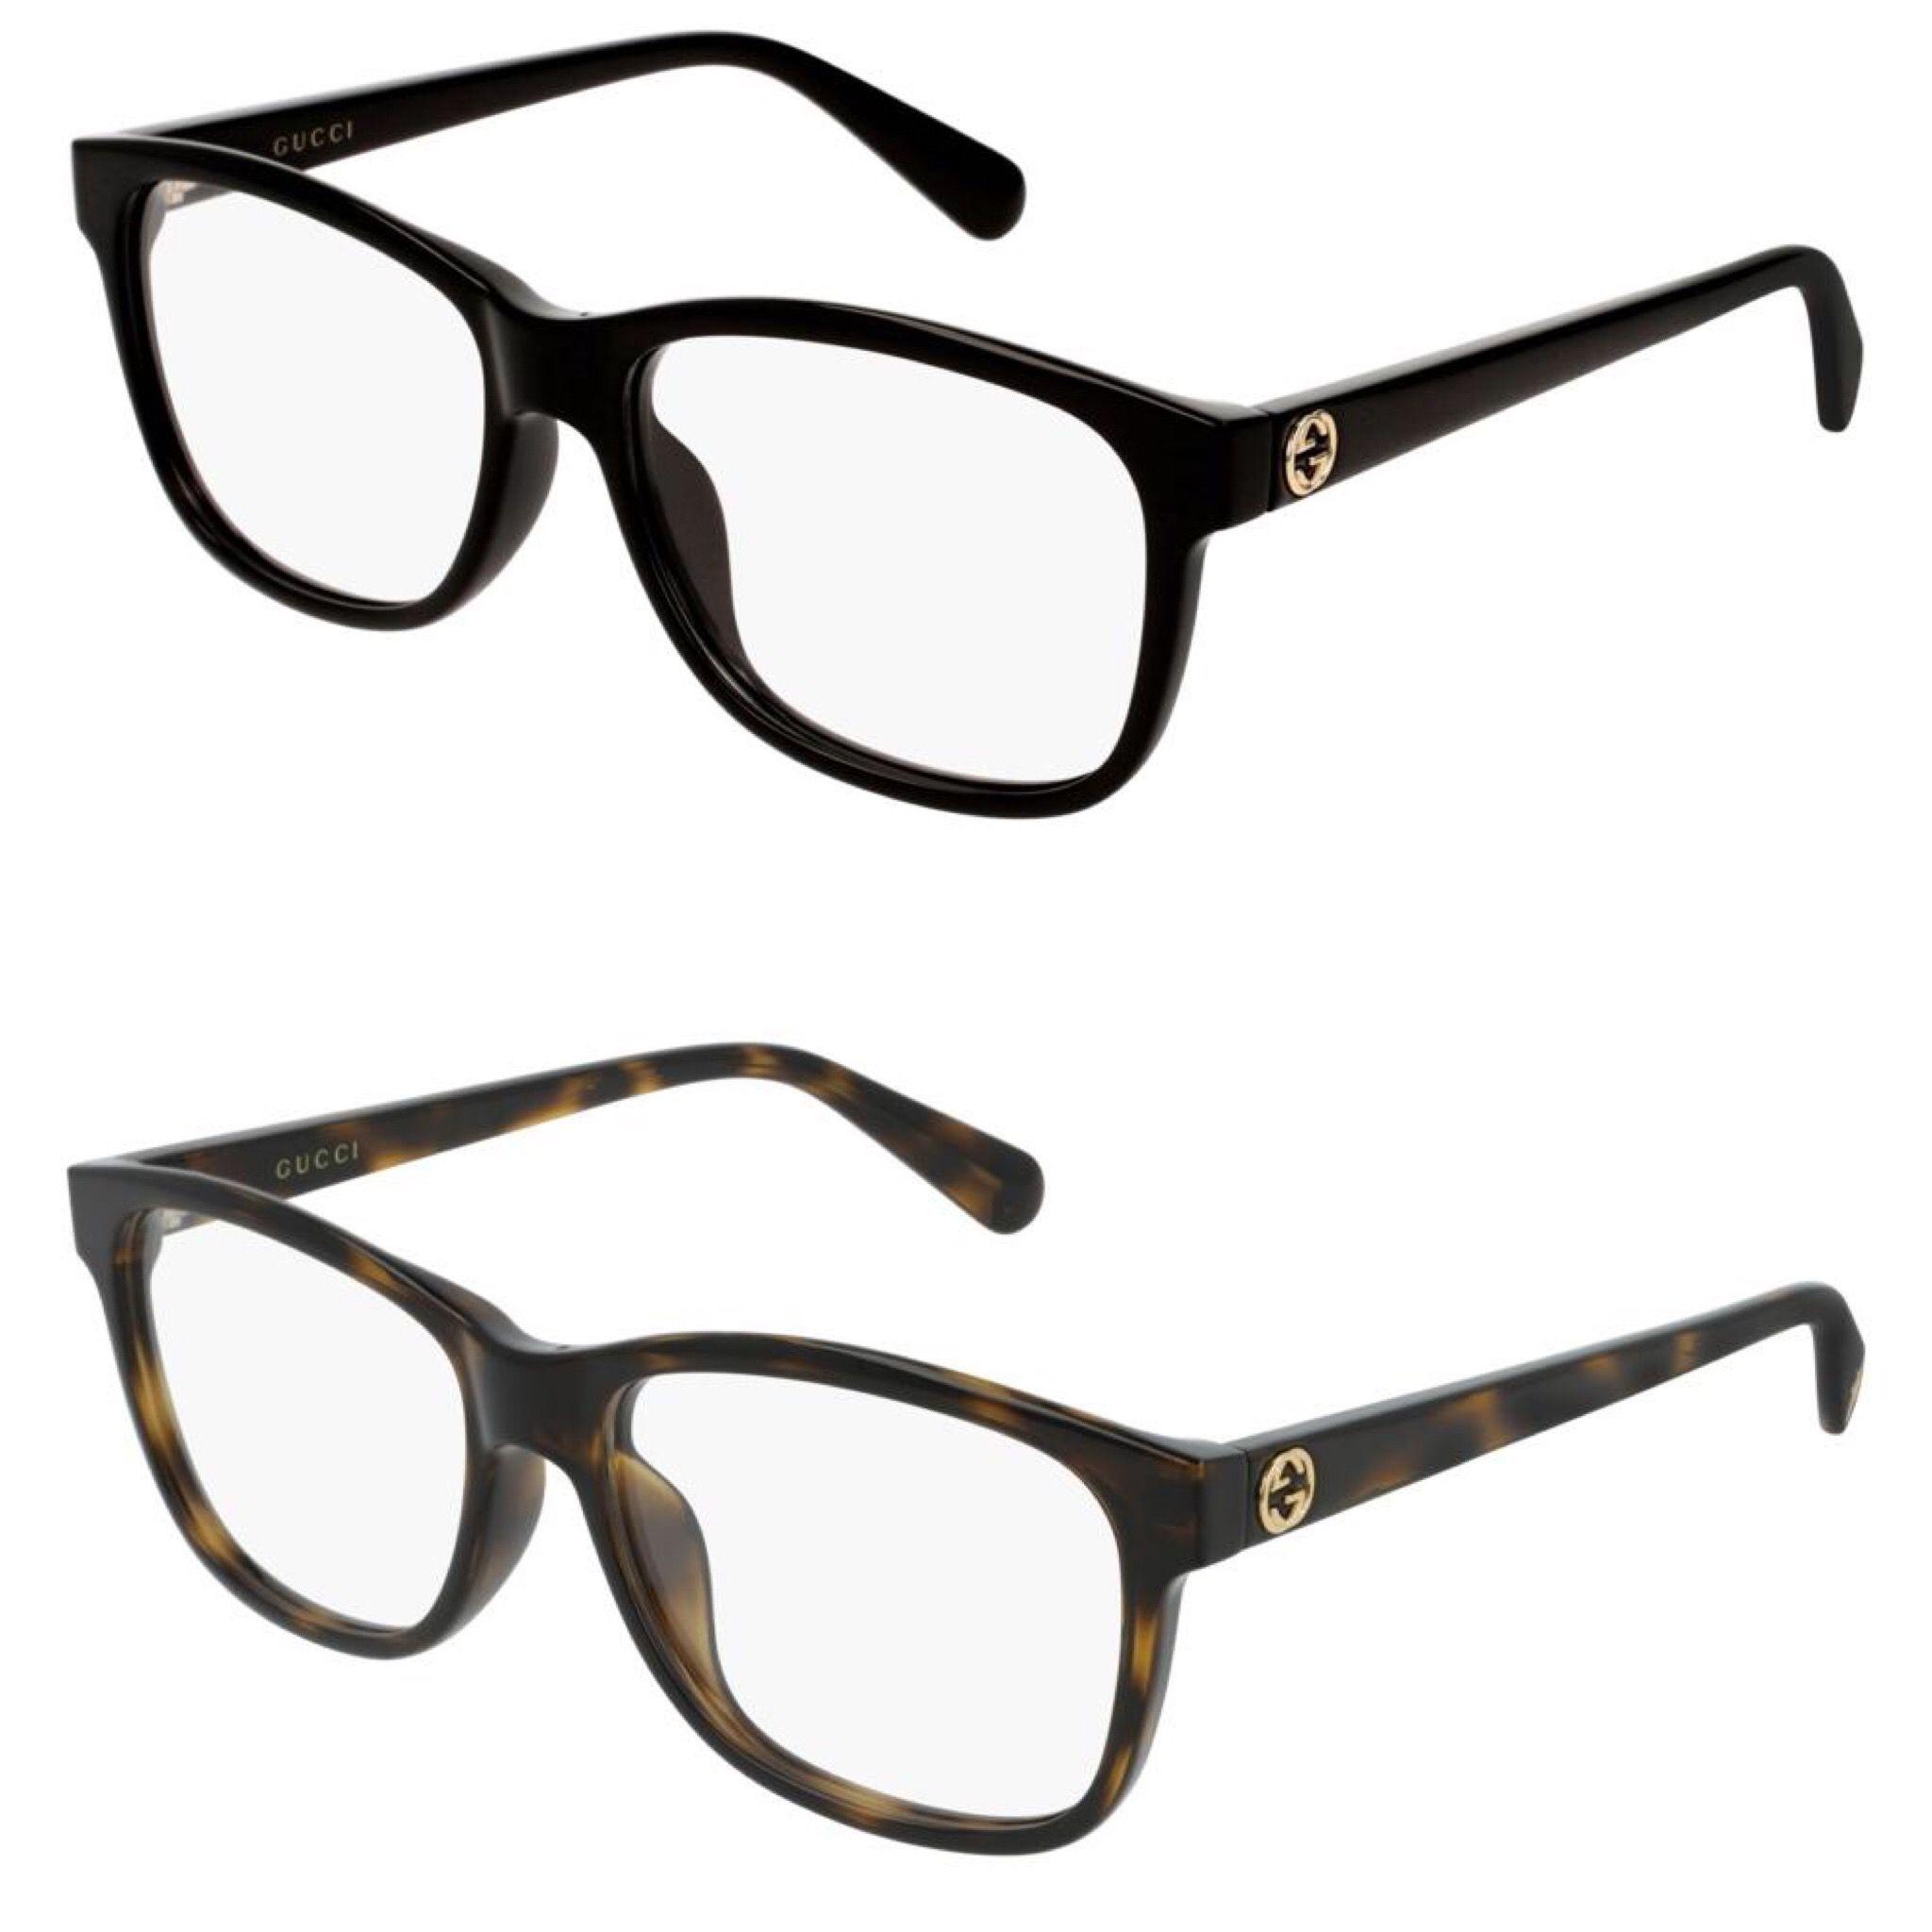 Eyeglasses Logo - Gucci 0374OA Thick Rim Logo Eyeglasses Frames (4 Colors)